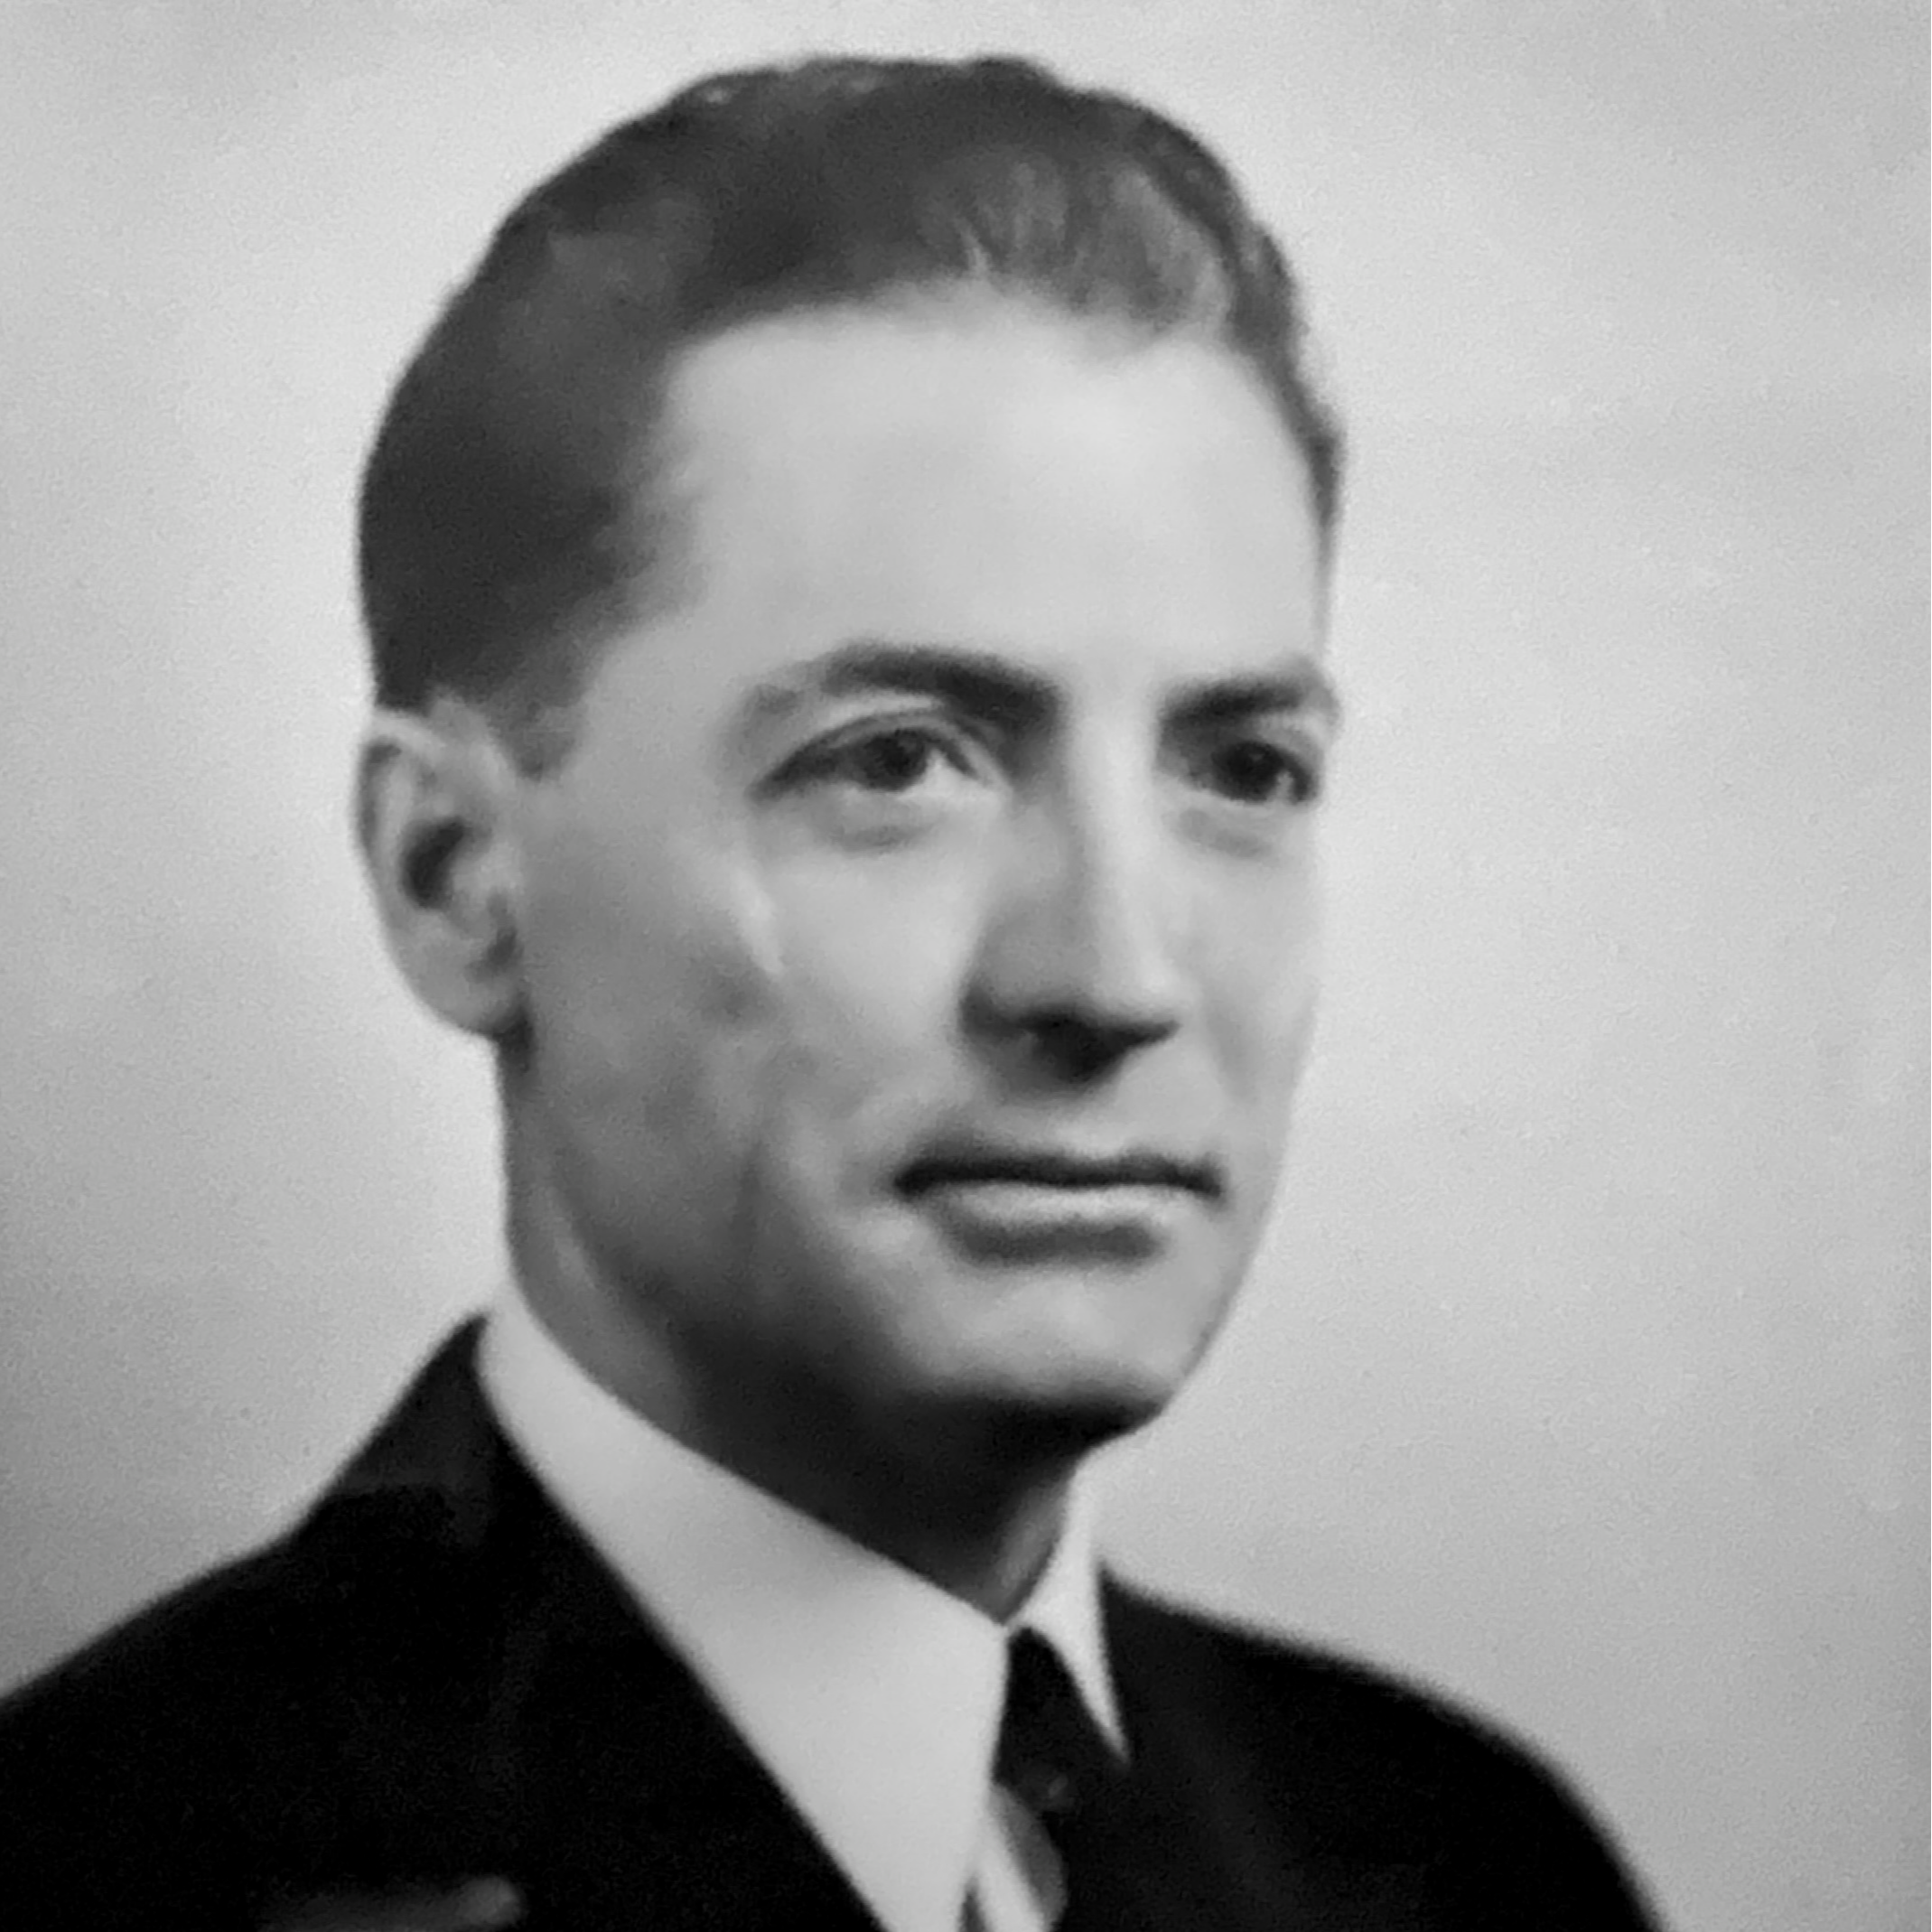 Herbert E. Wrinkle, 1935-1940